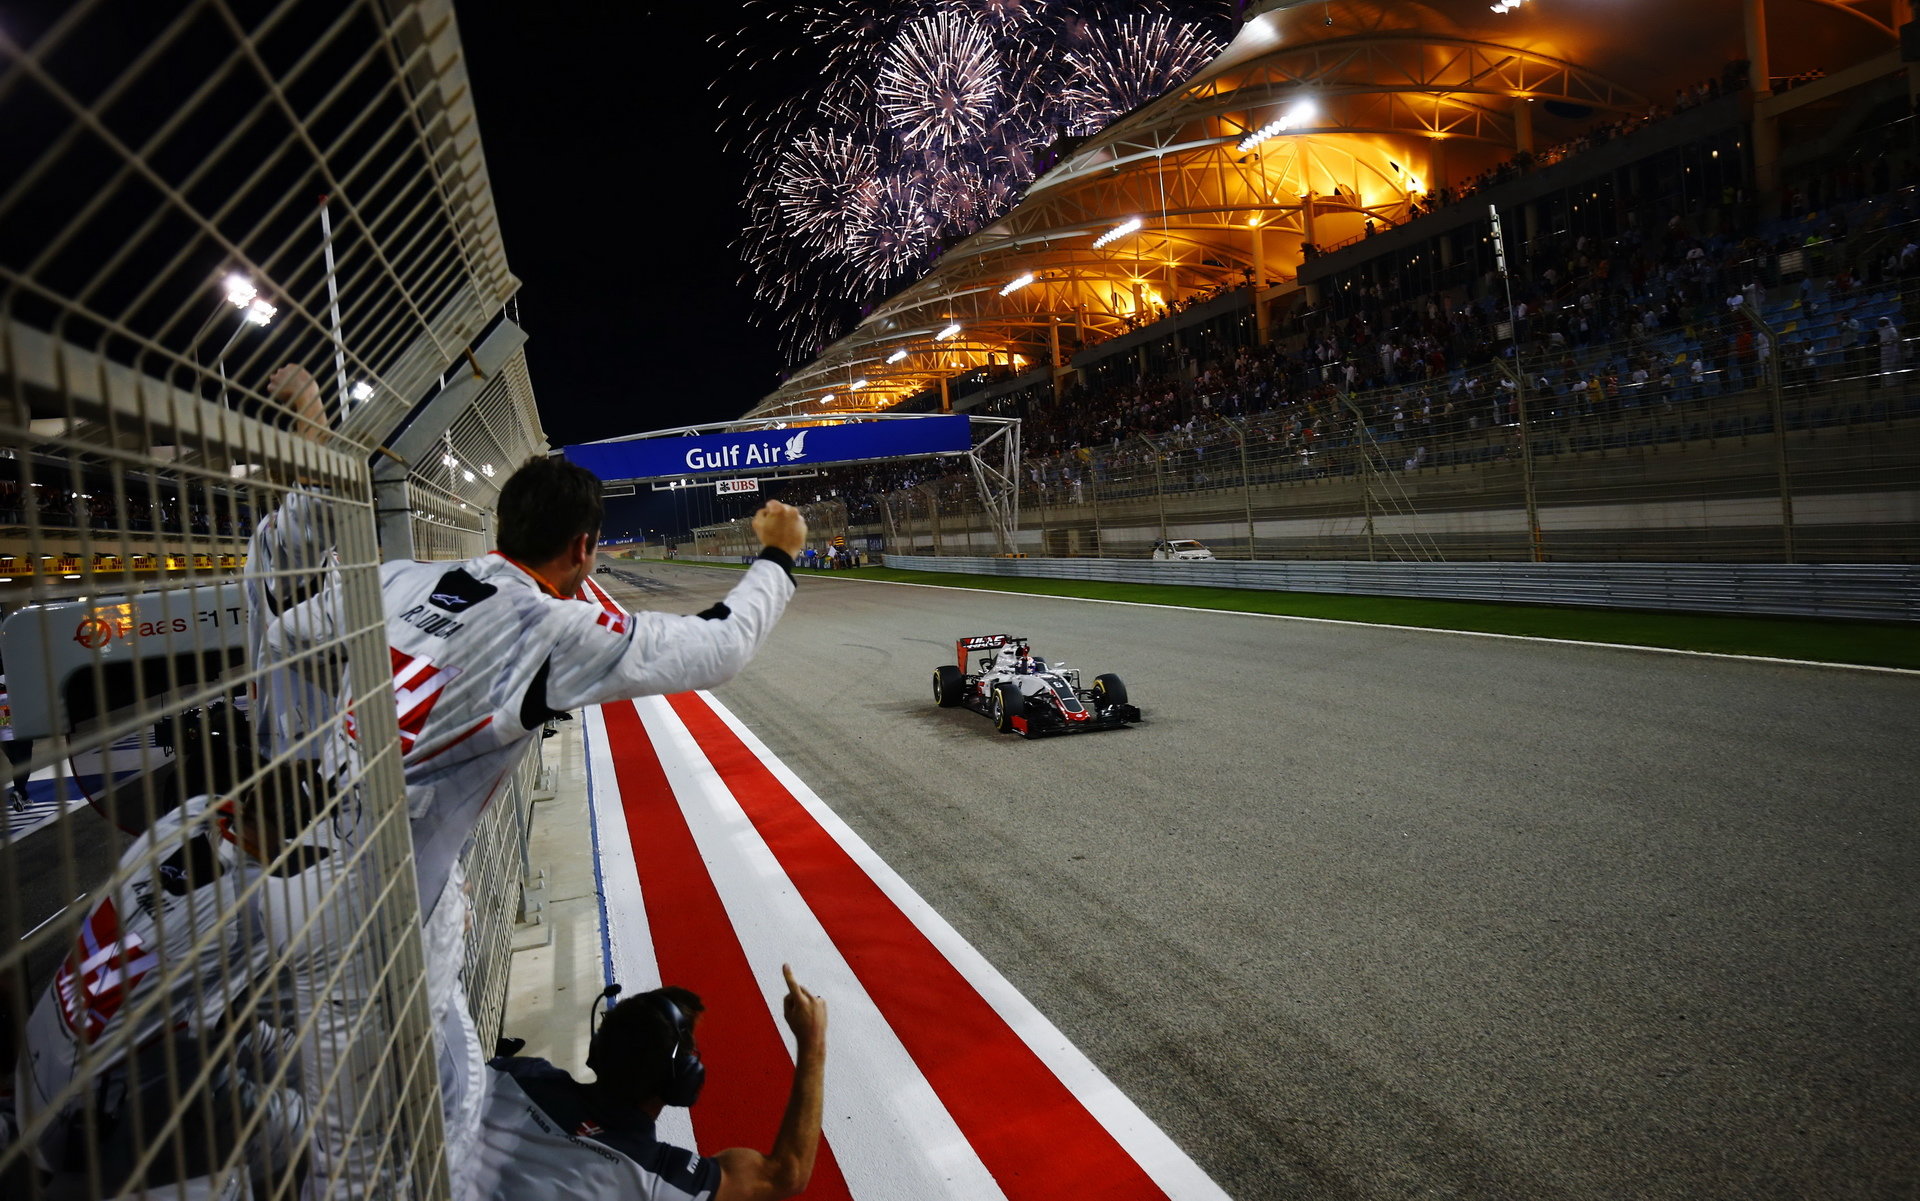 Romain Grosjean projíždí cílem v Bahrajnu jako pátý